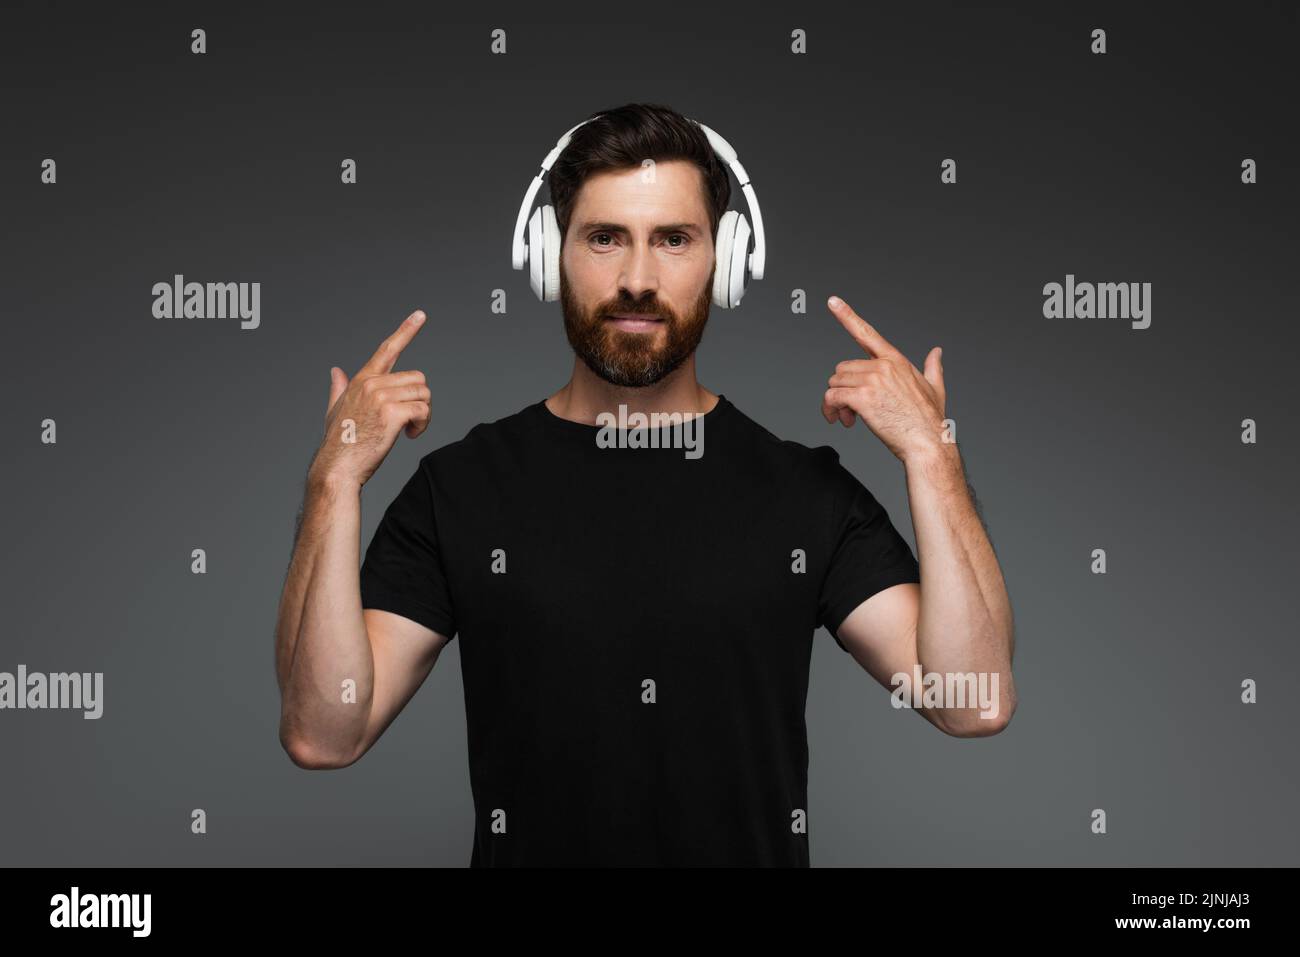 hombre barbudo escuchando música y apuntando con los dedos a los auriculares inalámbricos aislados en una imagen de stock gris Foto de stock